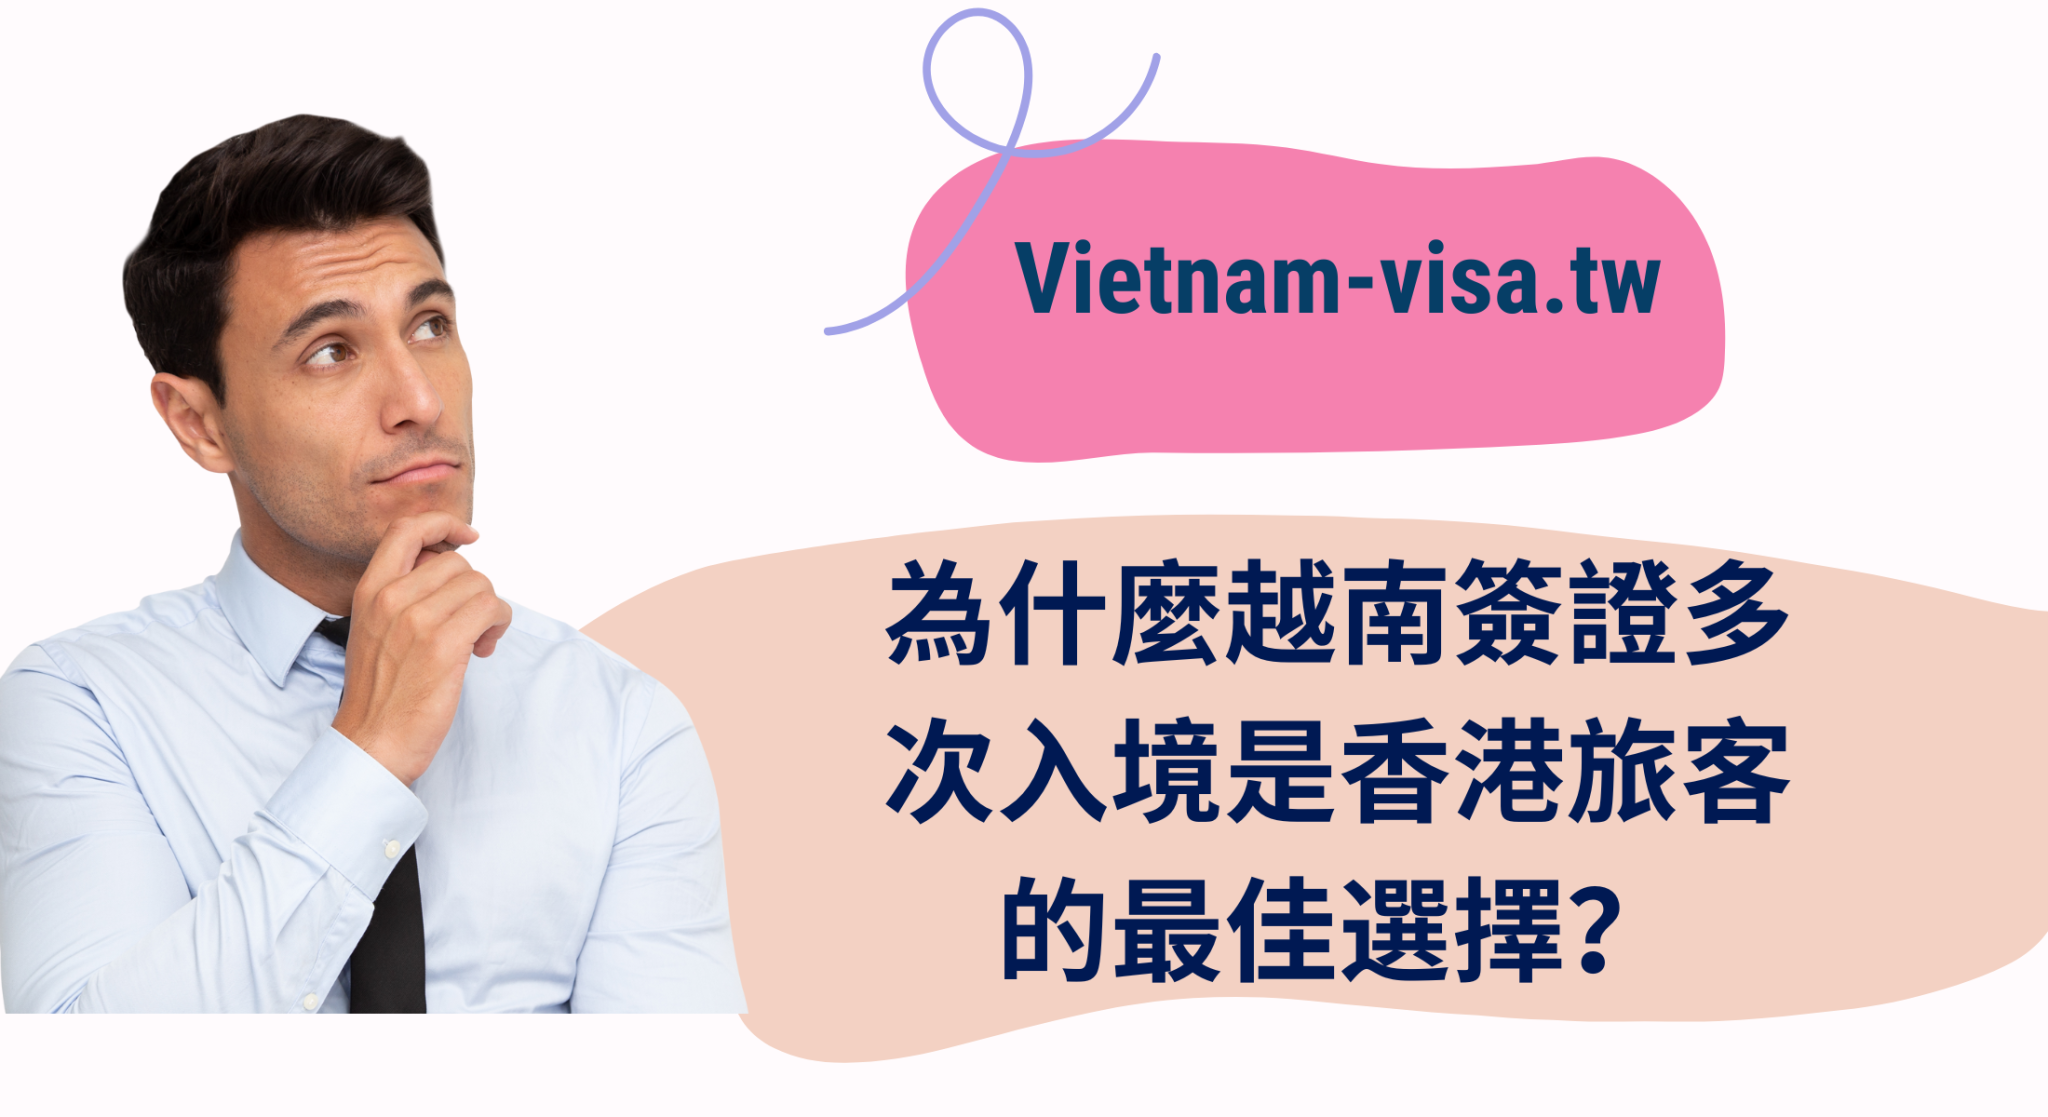 2023 恢復給台灣公民辦理越南落地簽證 -申請簽證的最新指南 - 越南電子簽證 - 落地簽證